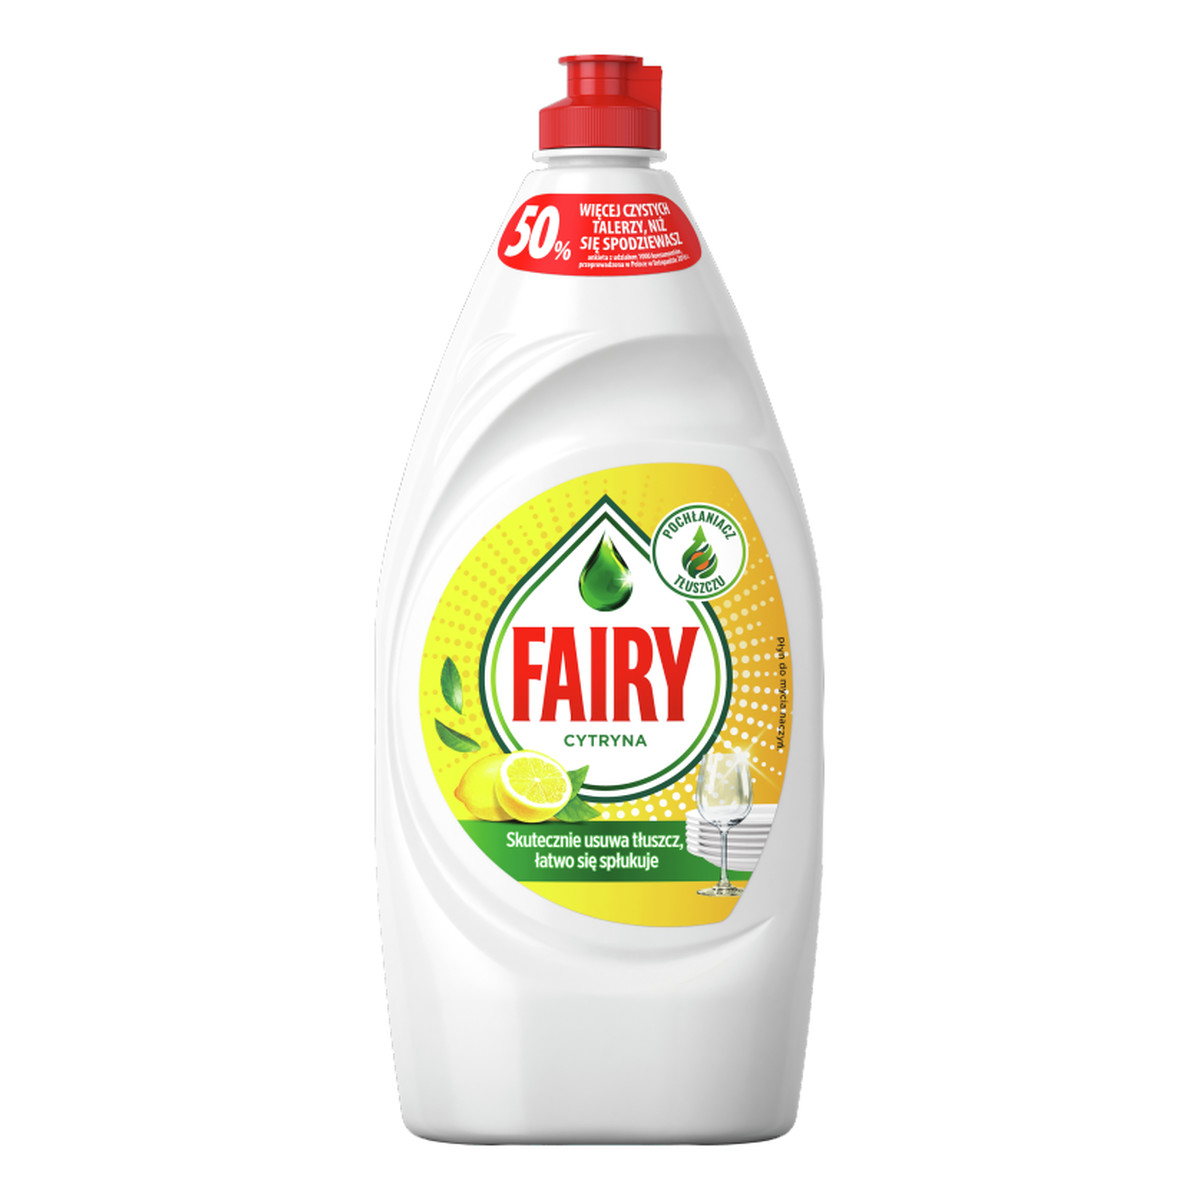 Fairy Płyn do mycia naczyń Cytryna 900ml